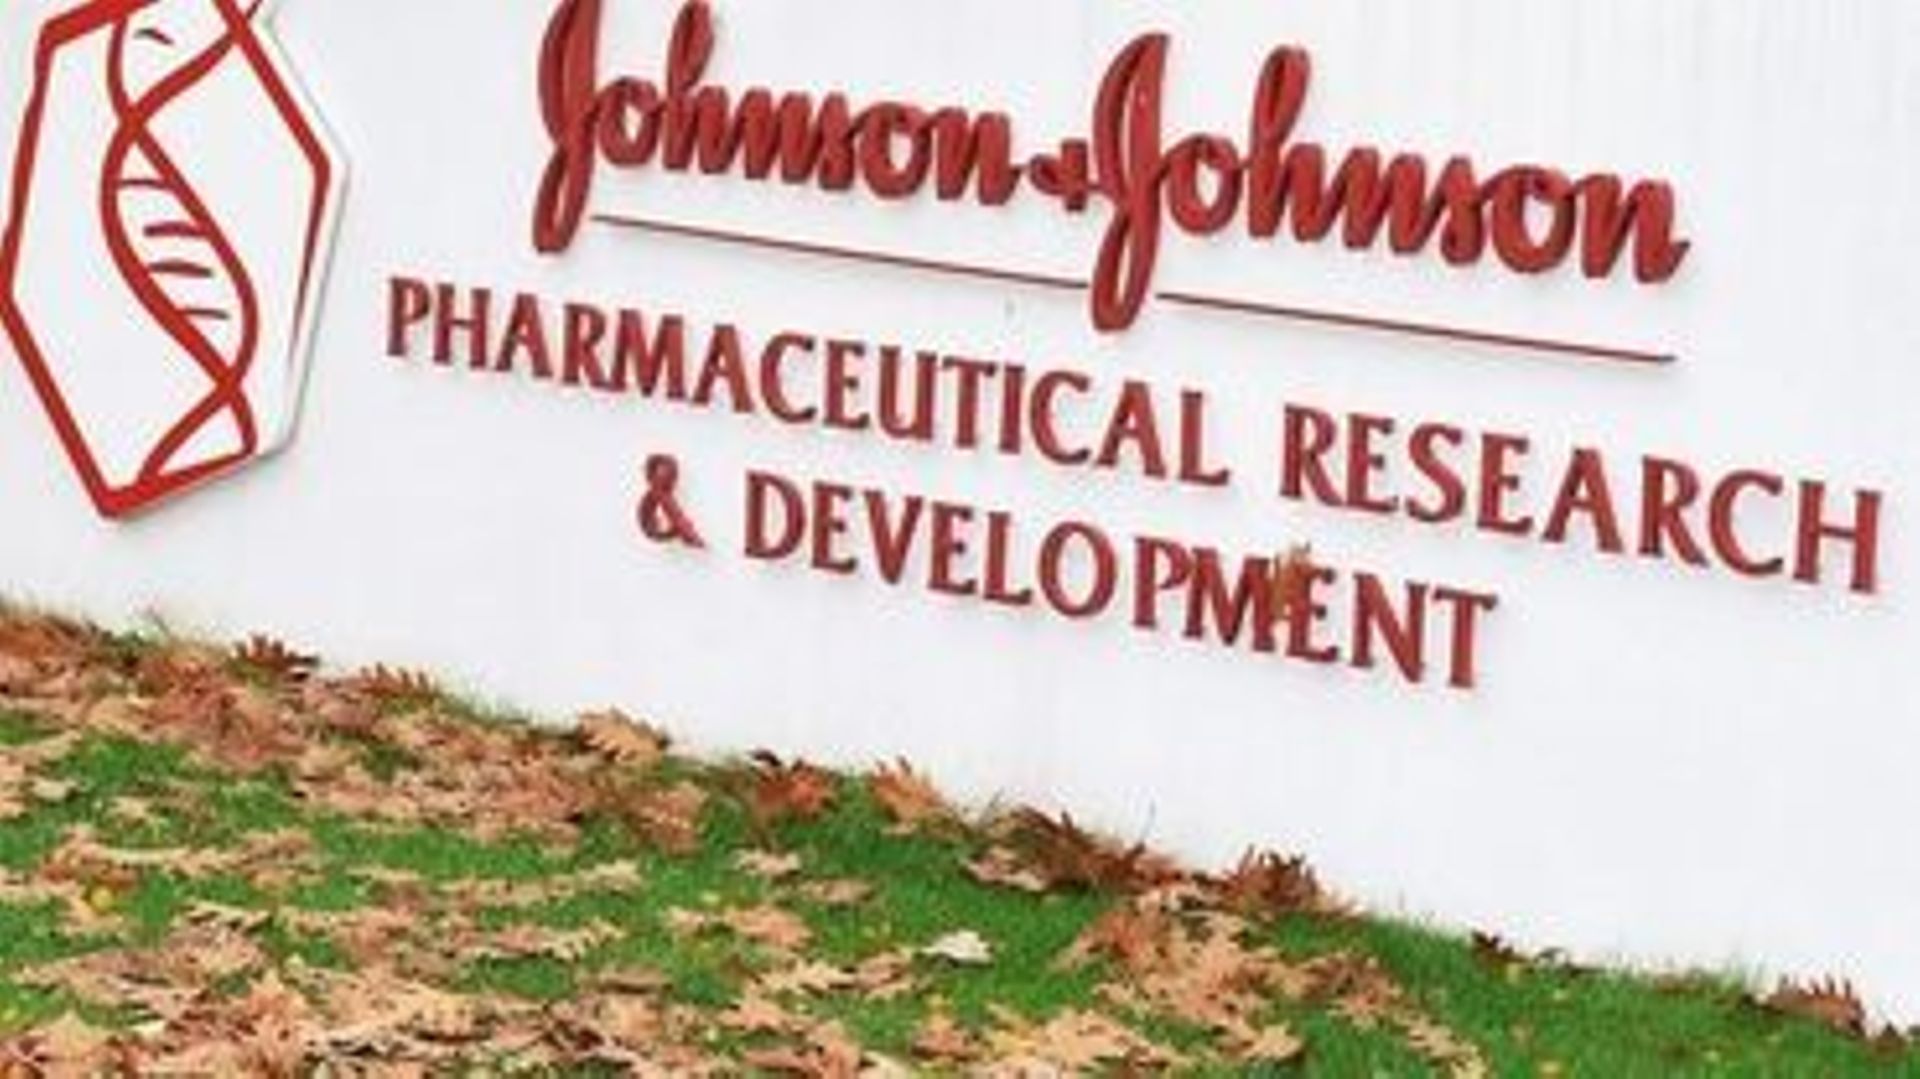 Johnson & Johnson a déjà reçu diverses commandes pour l'achat de doses de ce vaccin